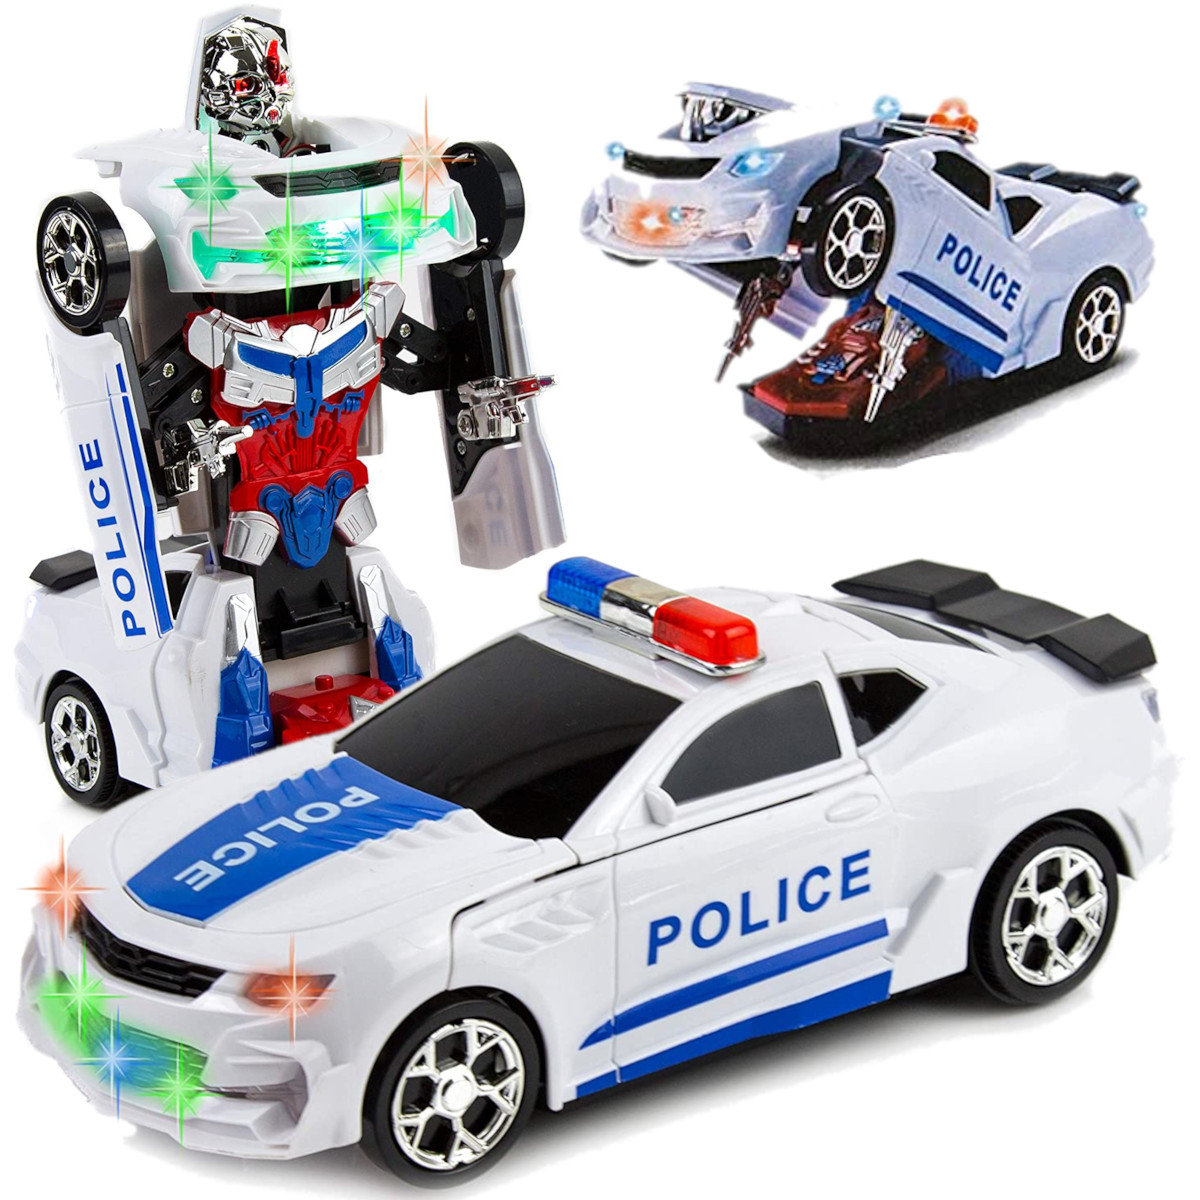 Samochód Policja 2W1 Auto-Robot Światła Dźwięk Led U459